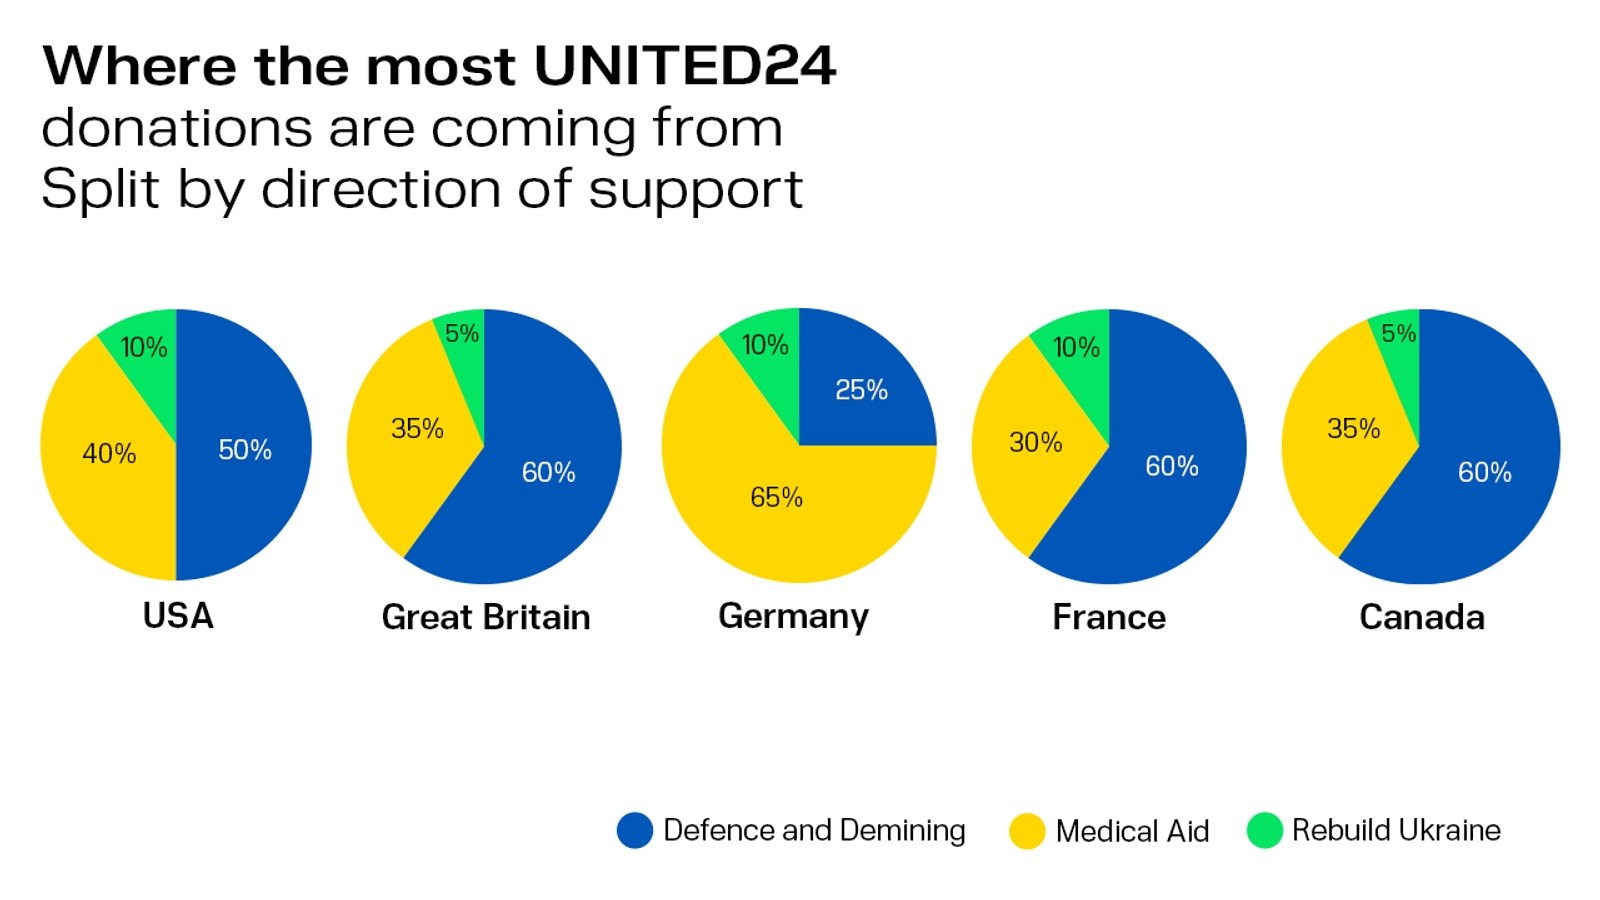 Звідки та на що донатять через UNITED24 найбільше